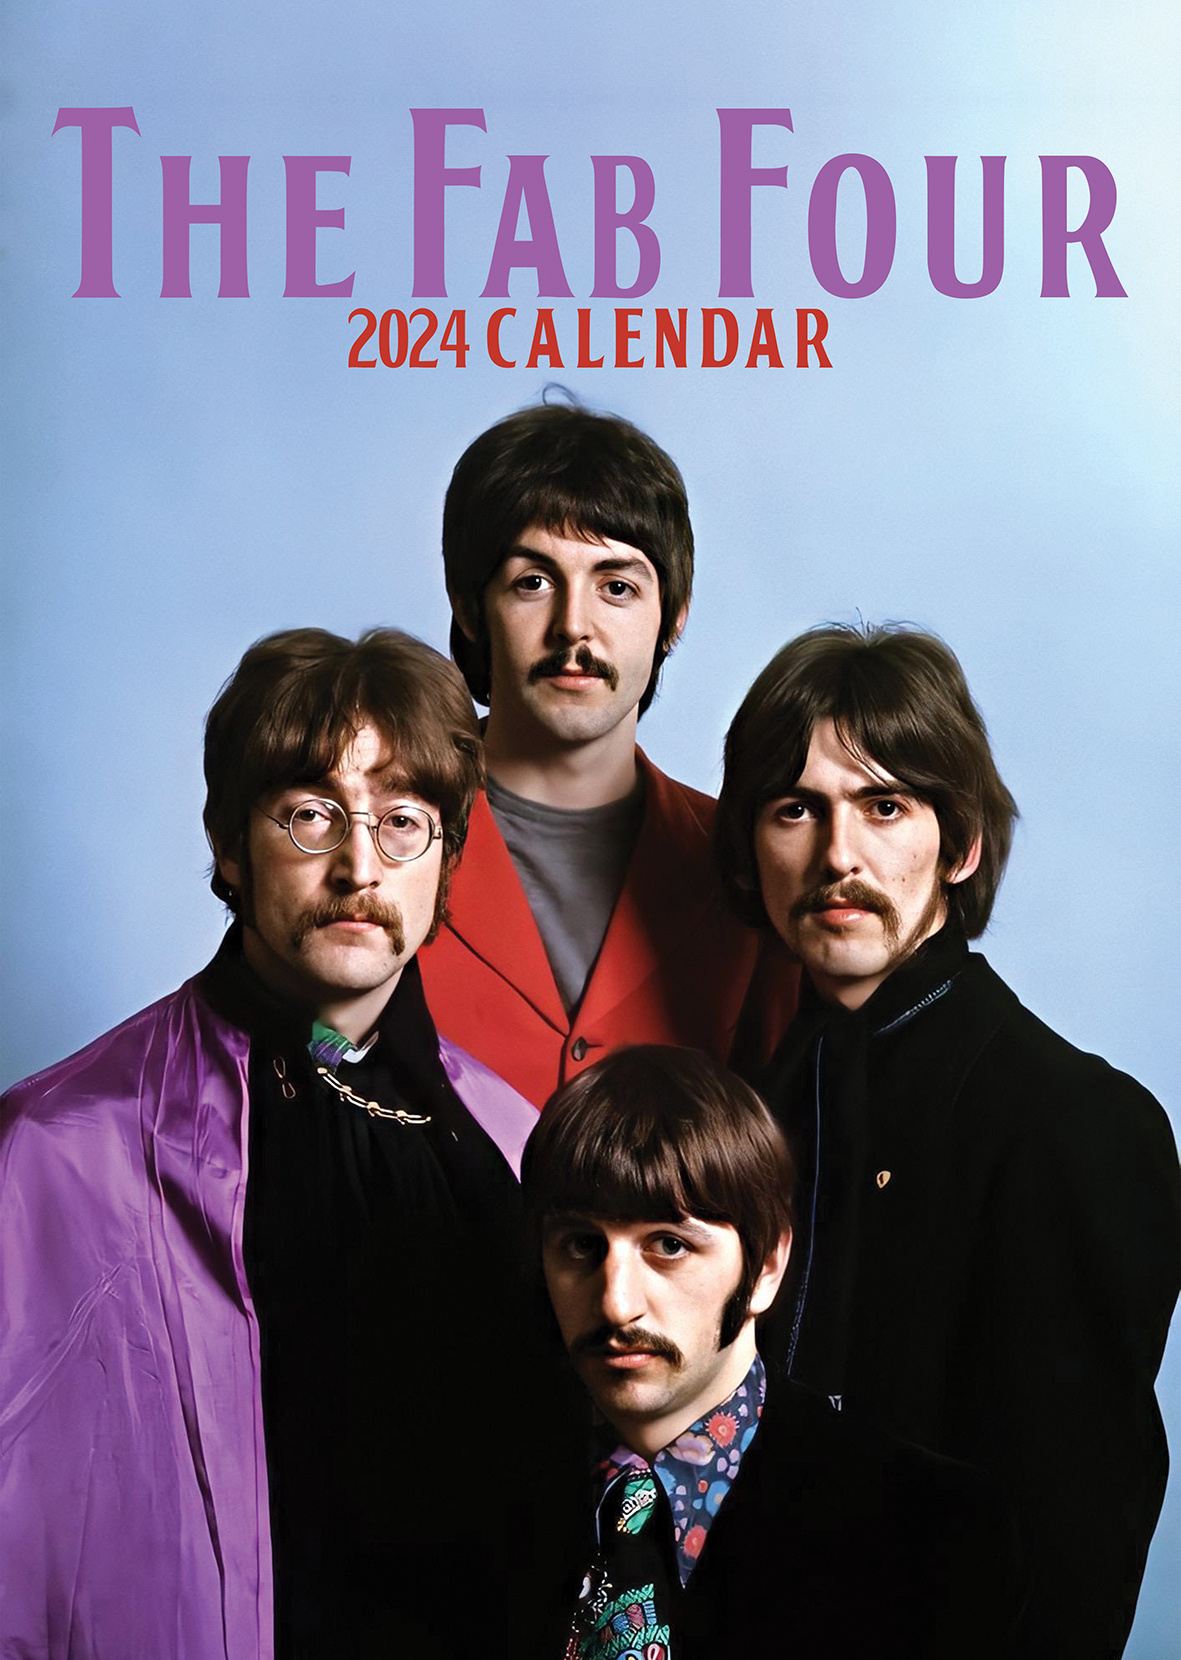 Buying The Beatles Calendar 2024 simply order online Kalenderwinkel.nl